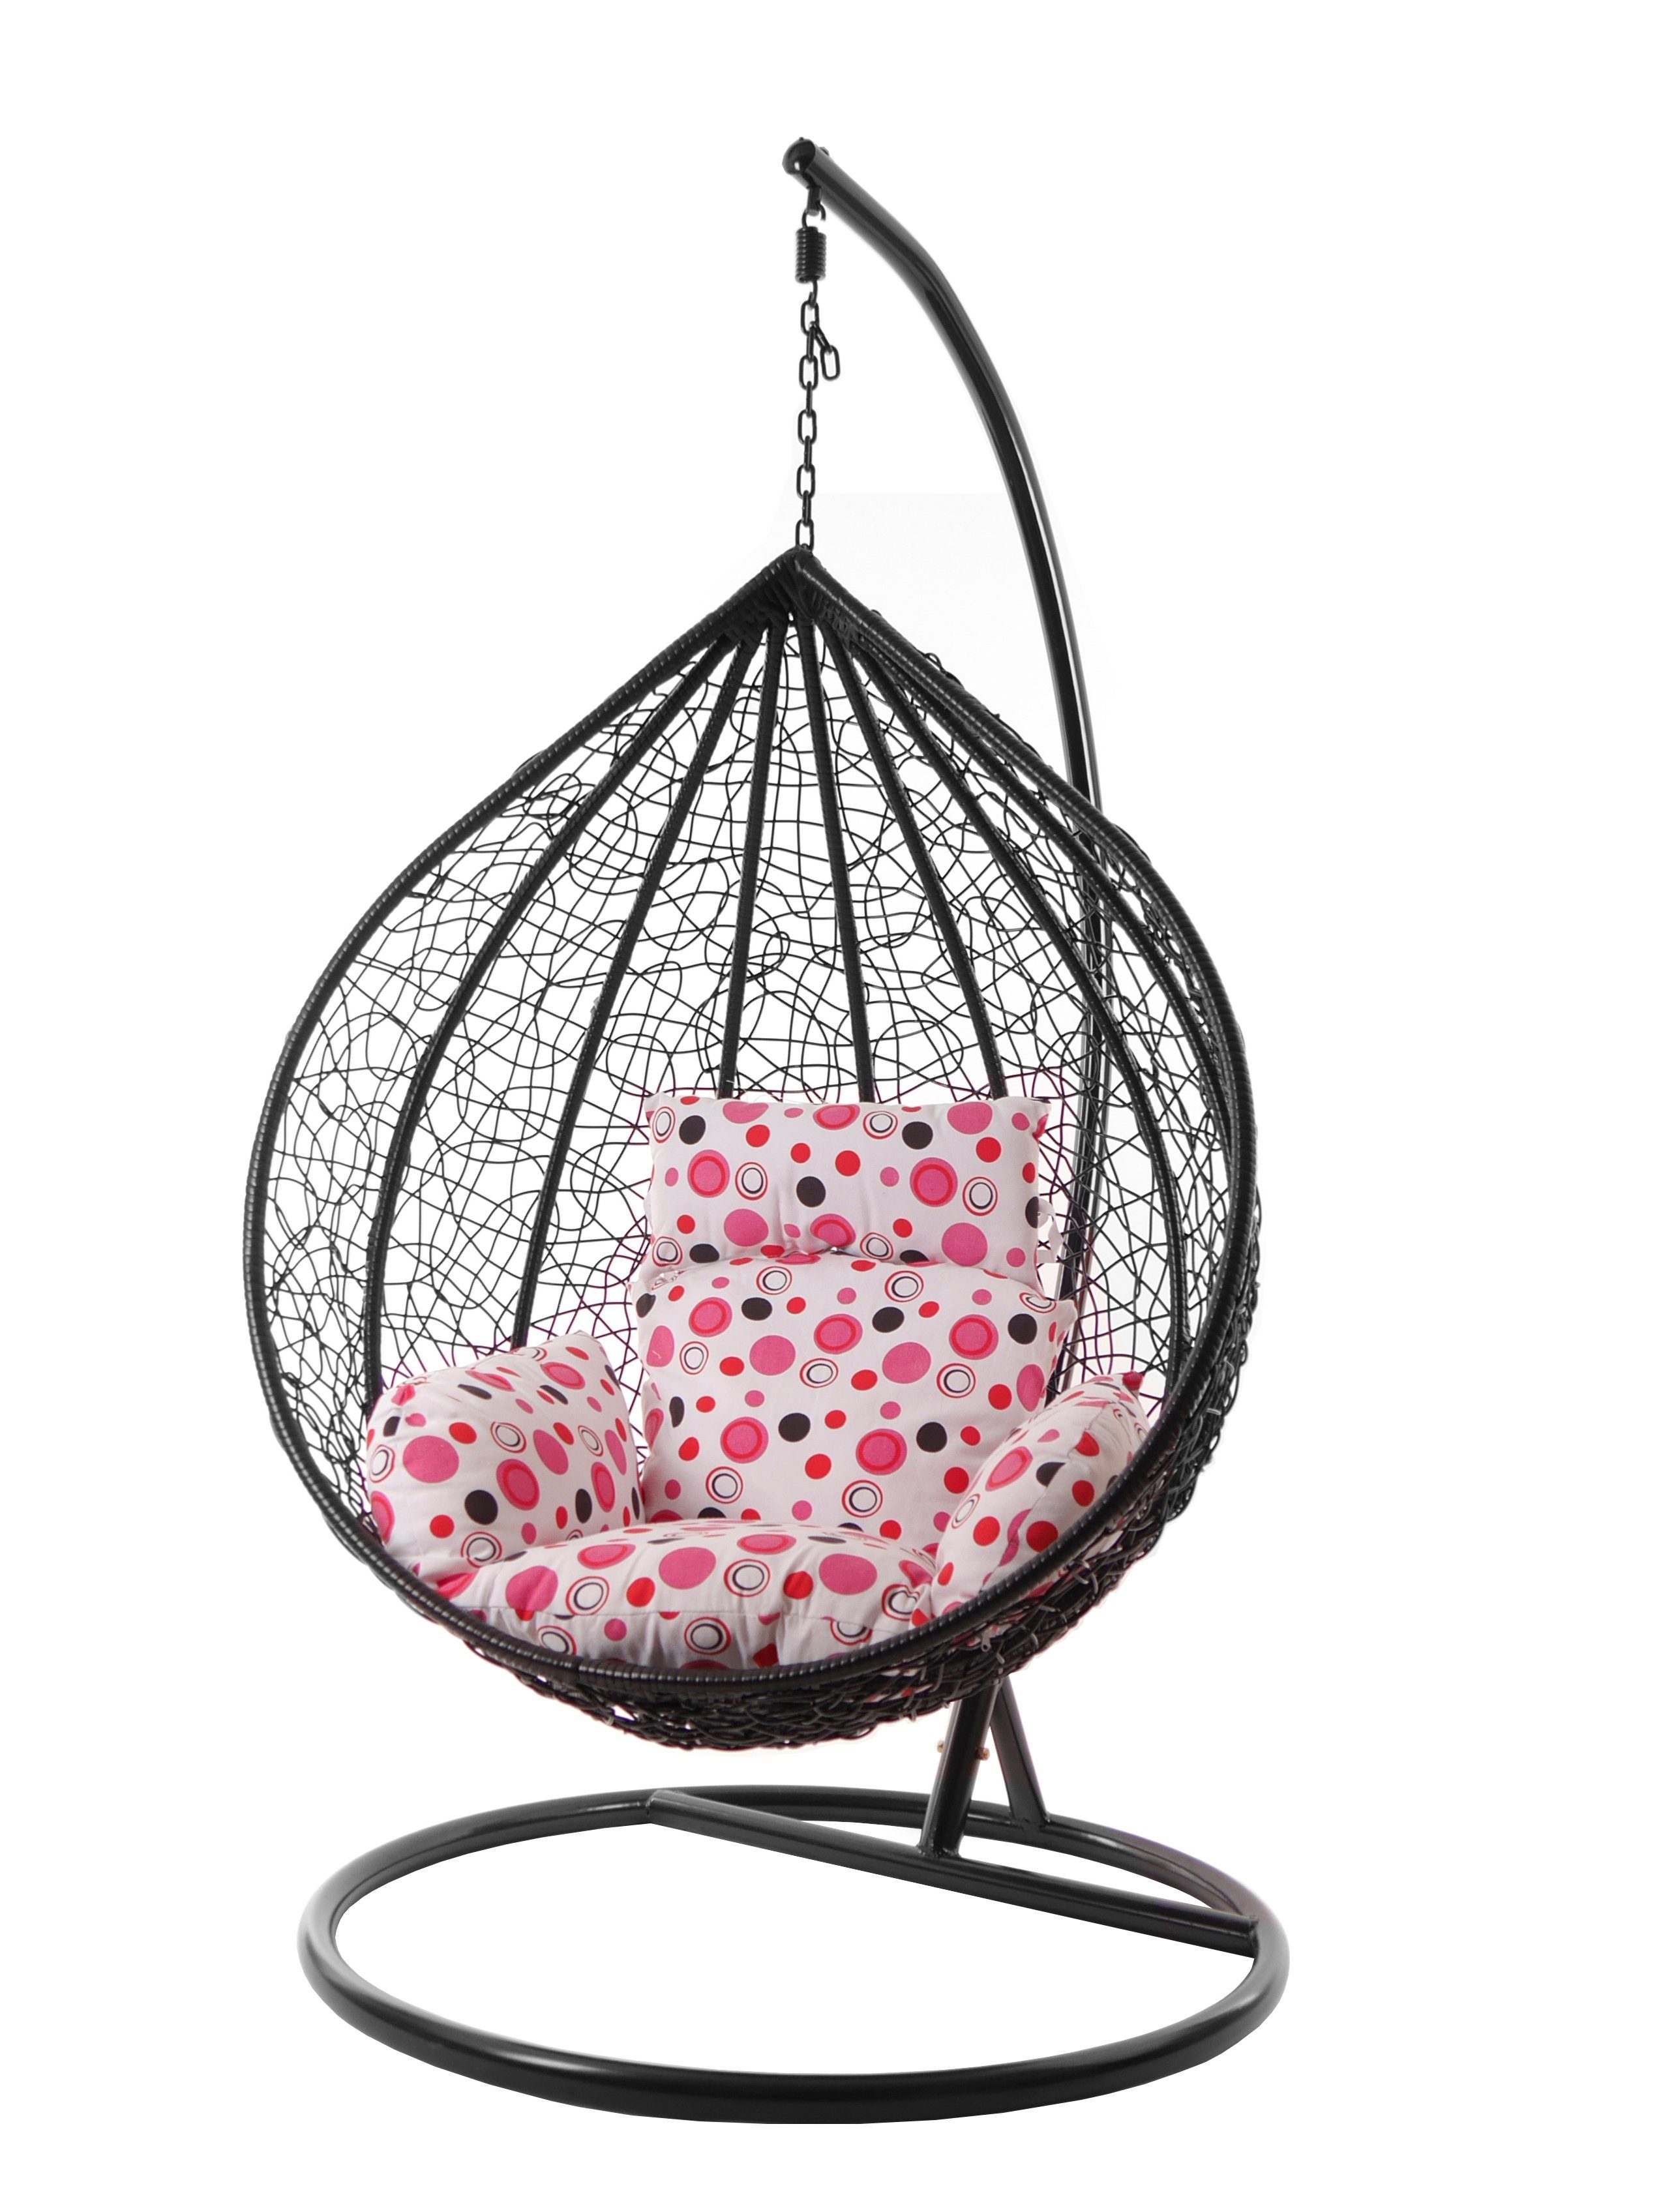 Kissen, Gestell Chair, und Nest-Kissen Hängesessel Hängesessel XXL rosa Hängesessel lemonade (3039 schwarz, dot) Swing gepunktet MANACOR KIDEO mit